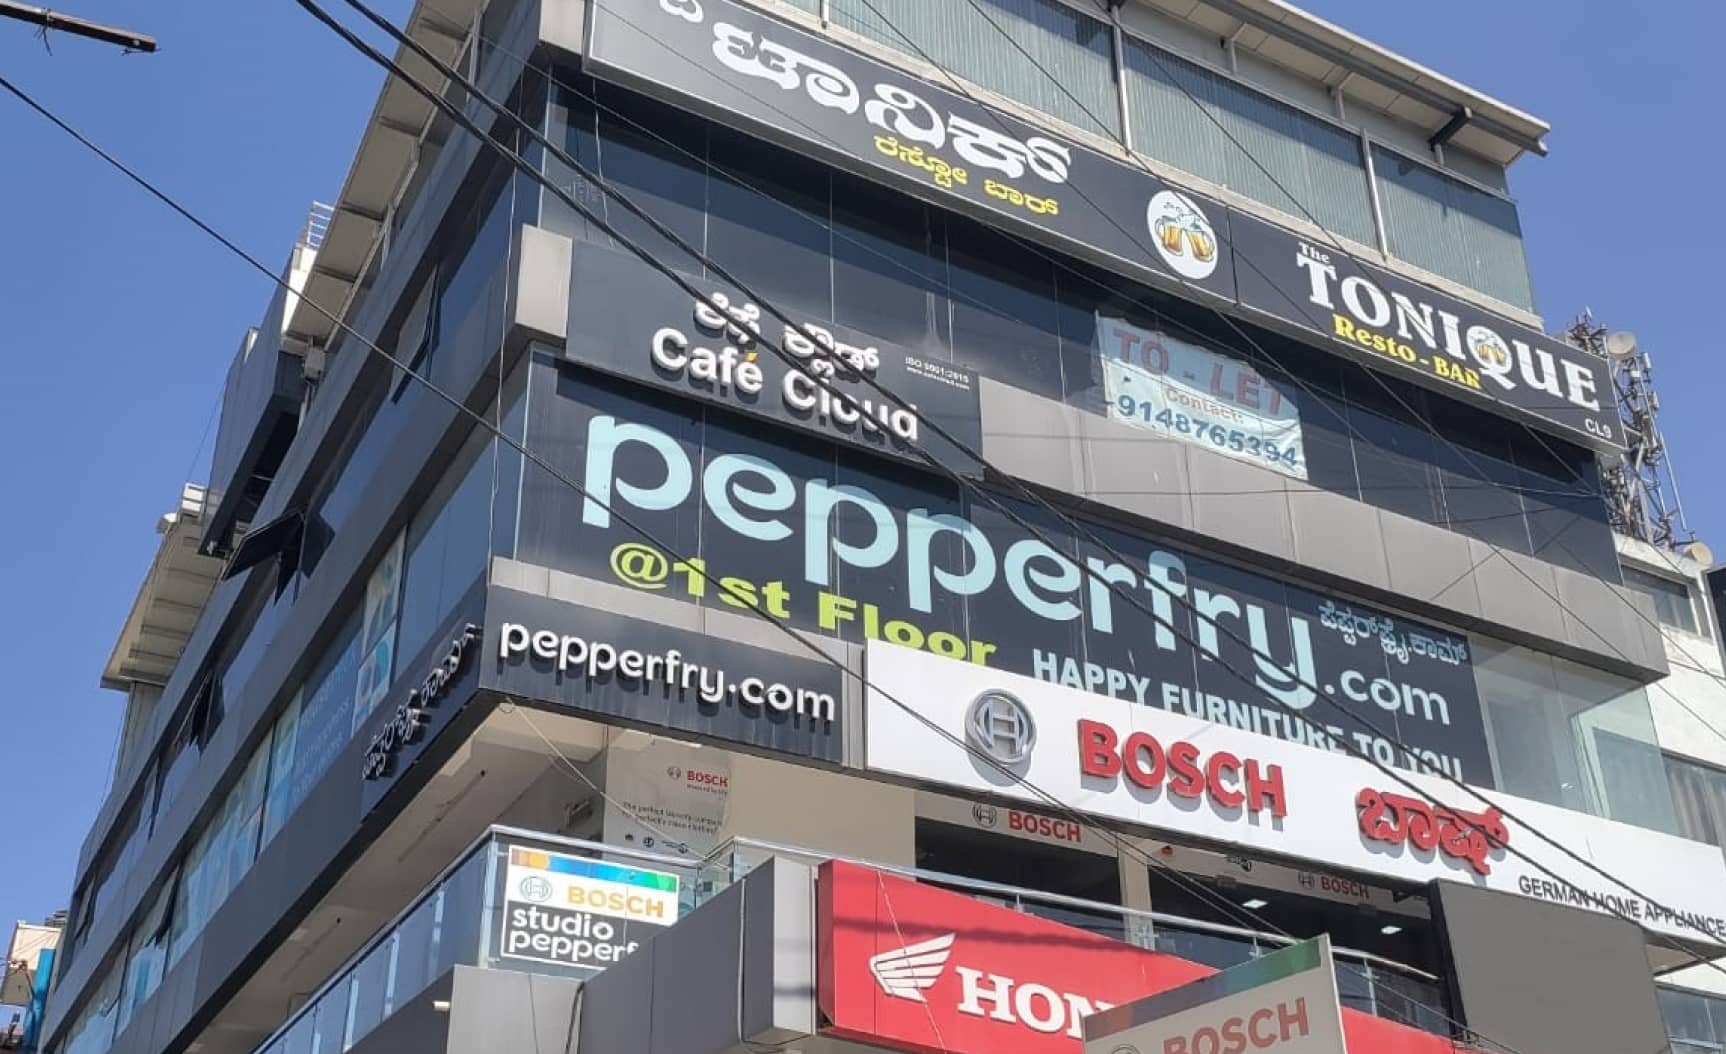 Studio Pepperfry - Battarahalli Jn, Bengaluru